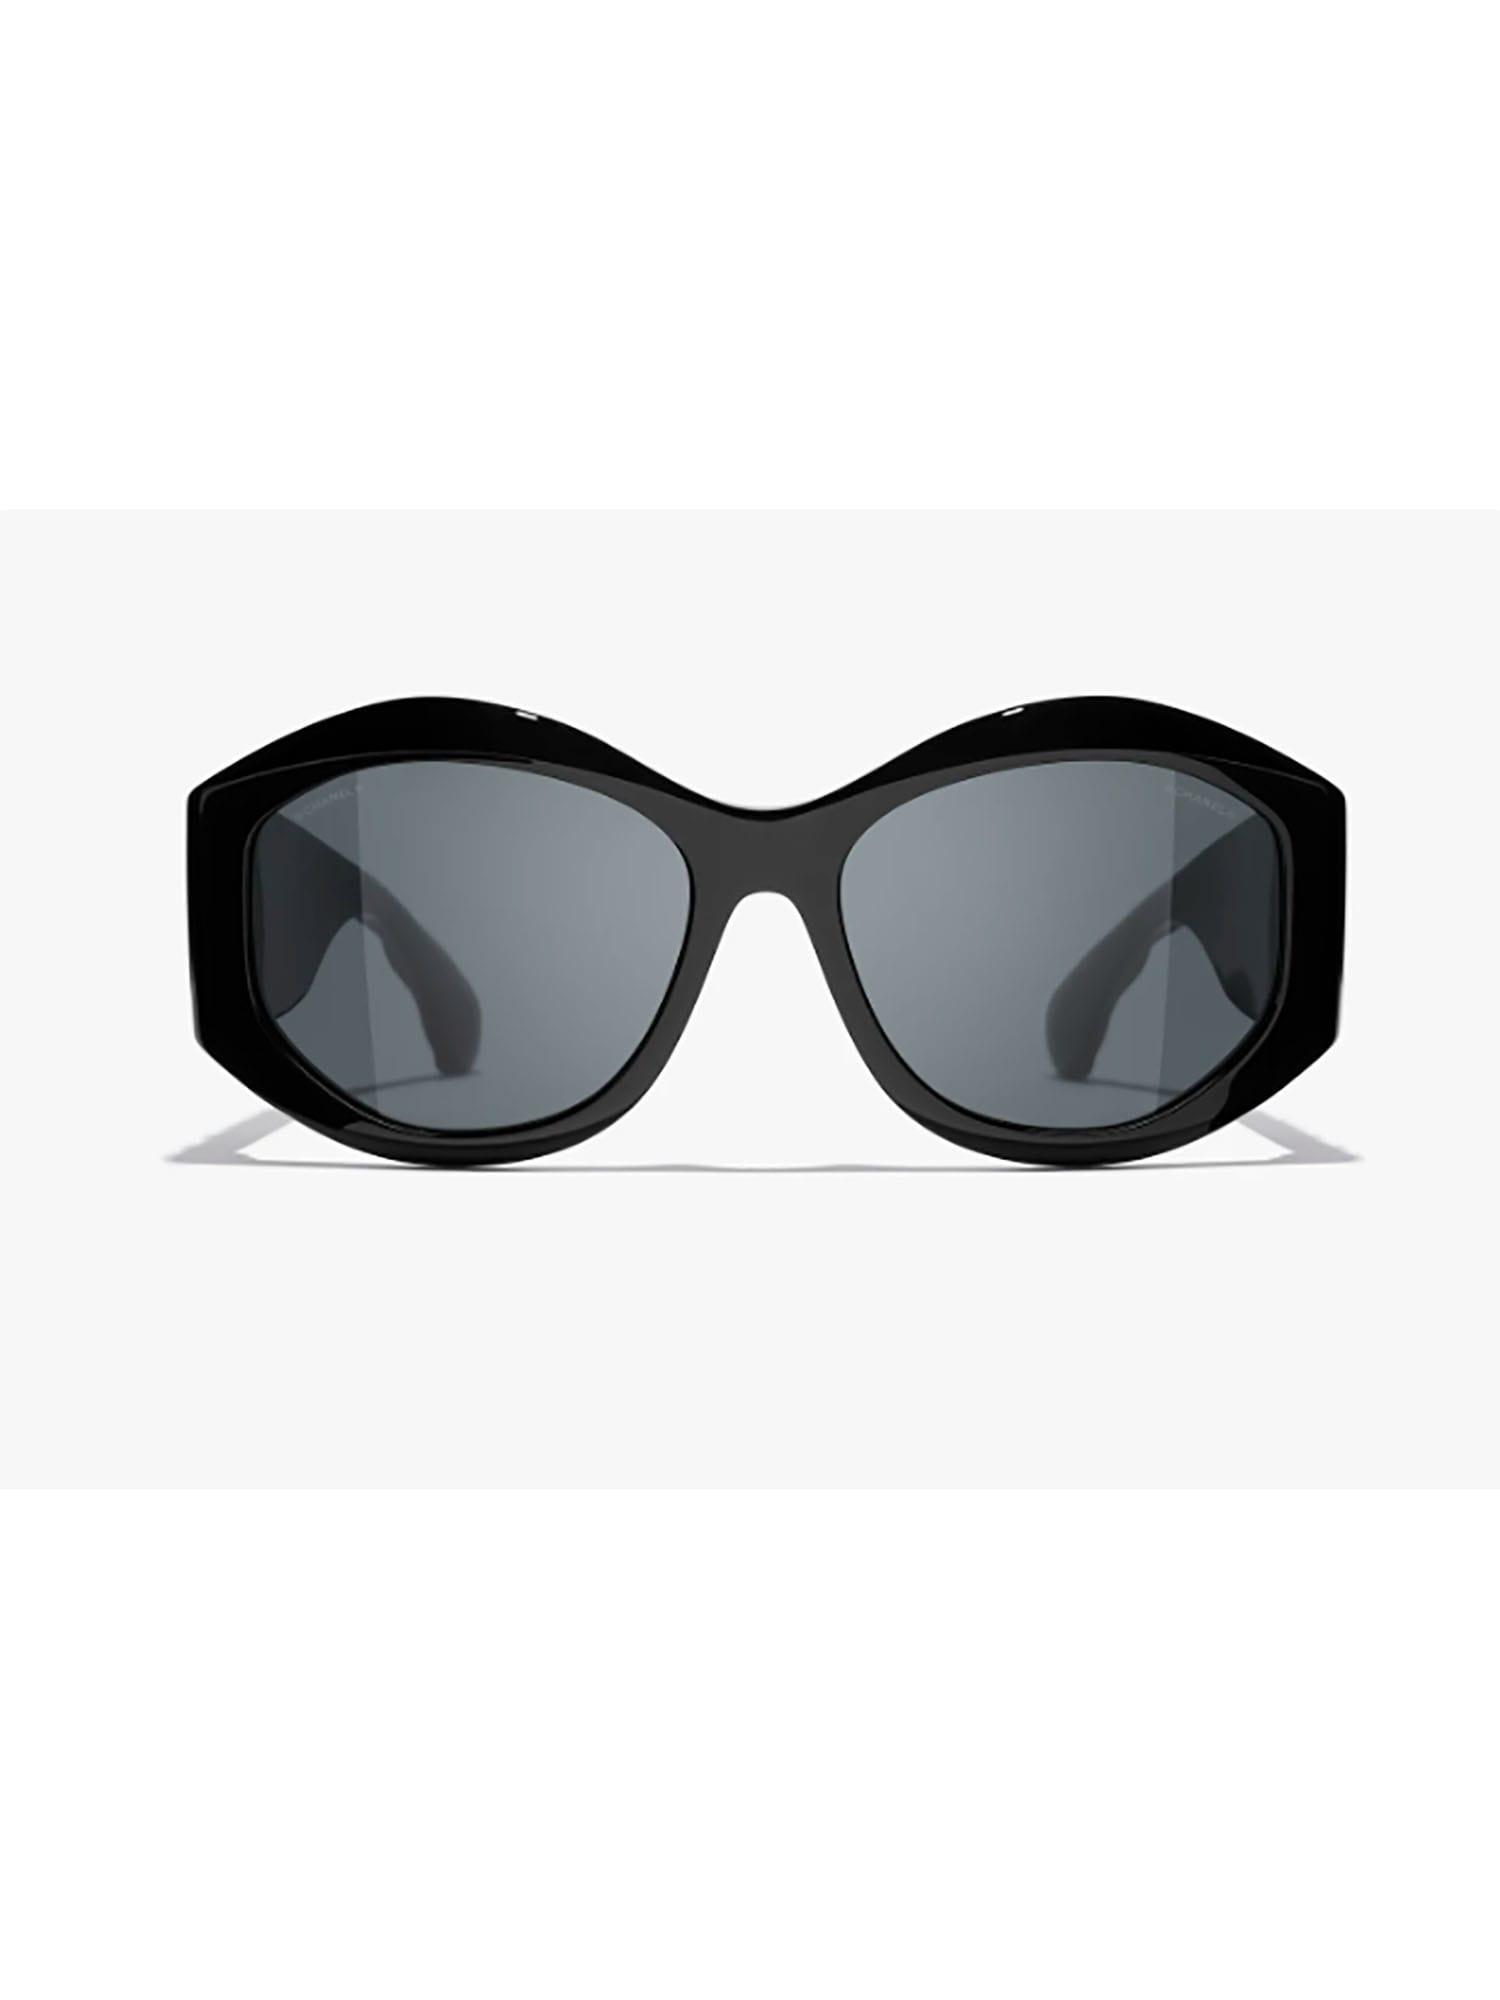 Chanel 5486 Sun Sunglasses in Black